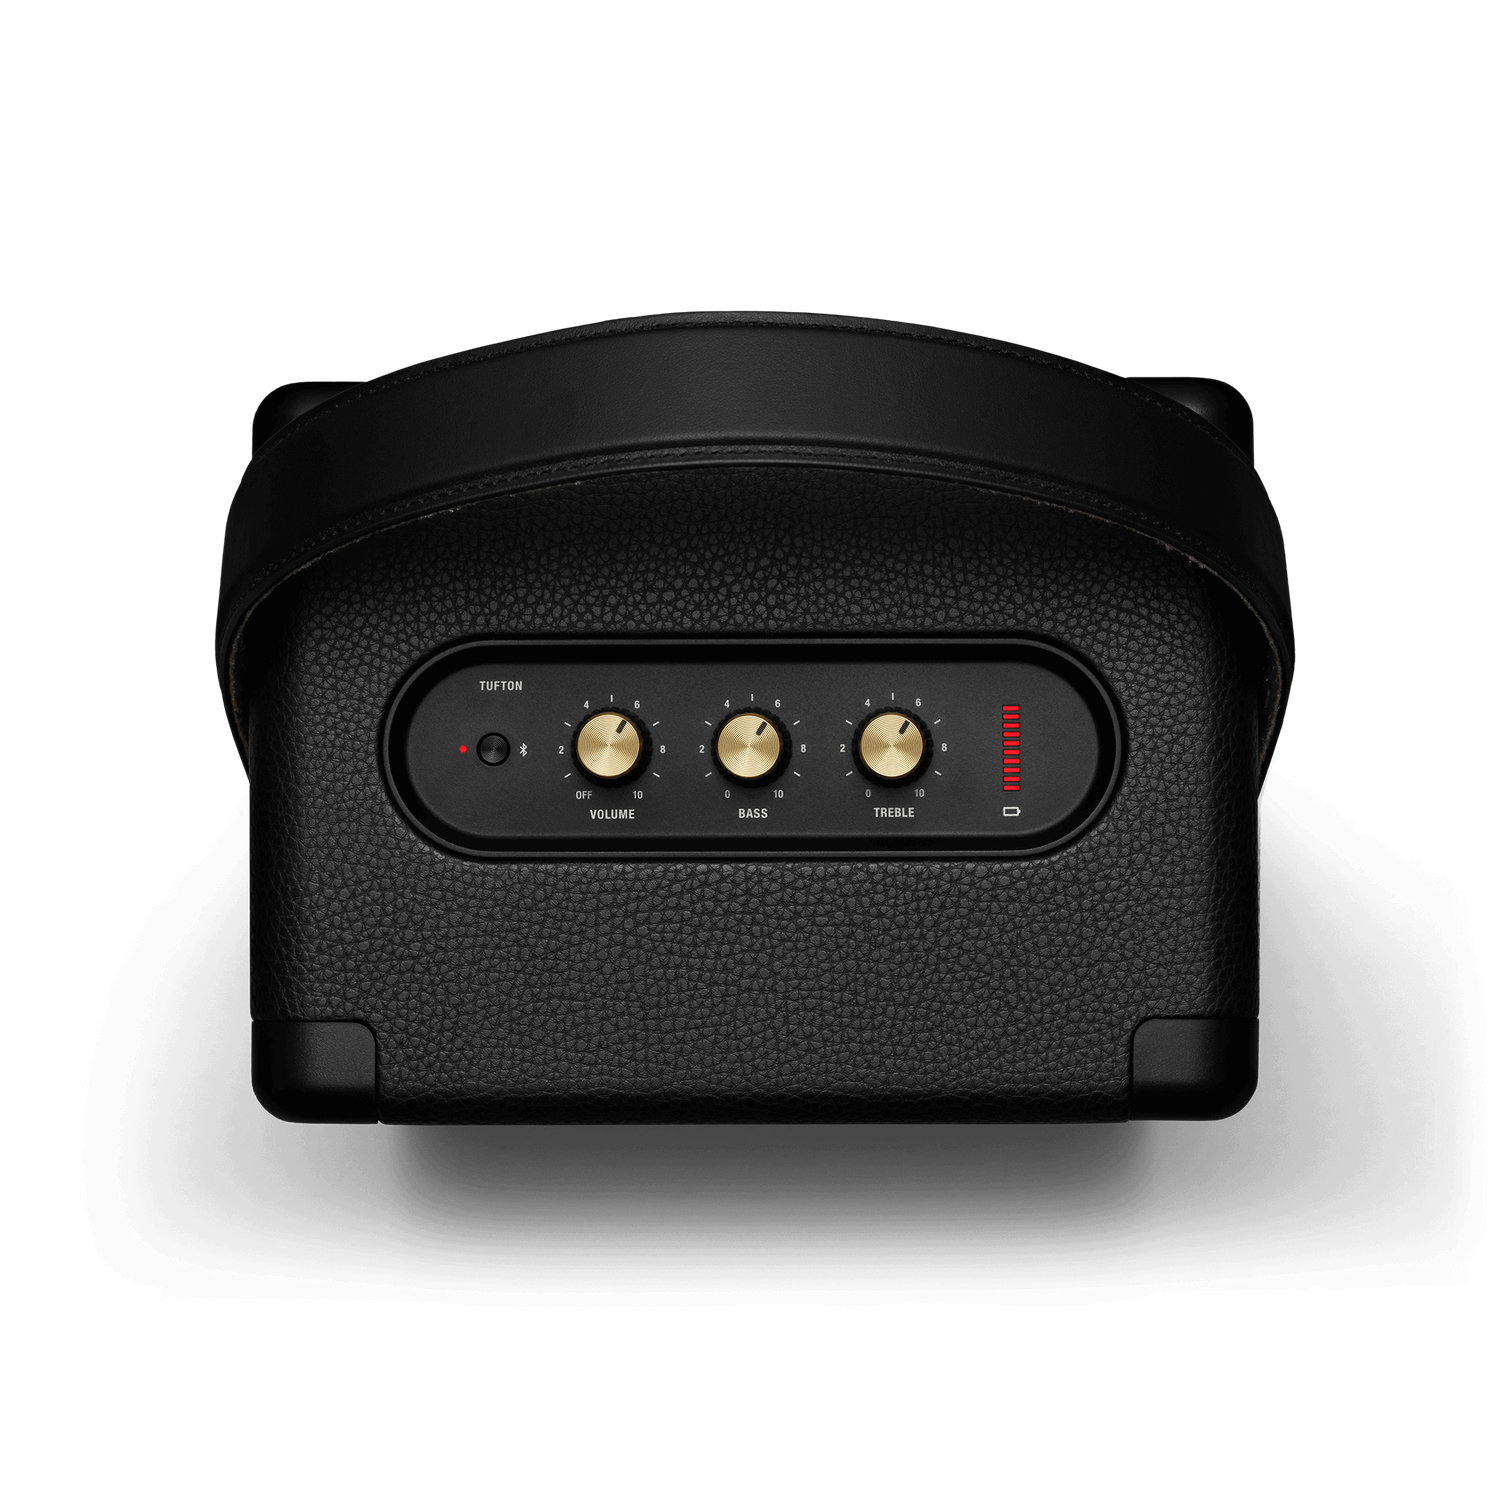 Marshall Tufton Portable Bluetooth Speaker (main)